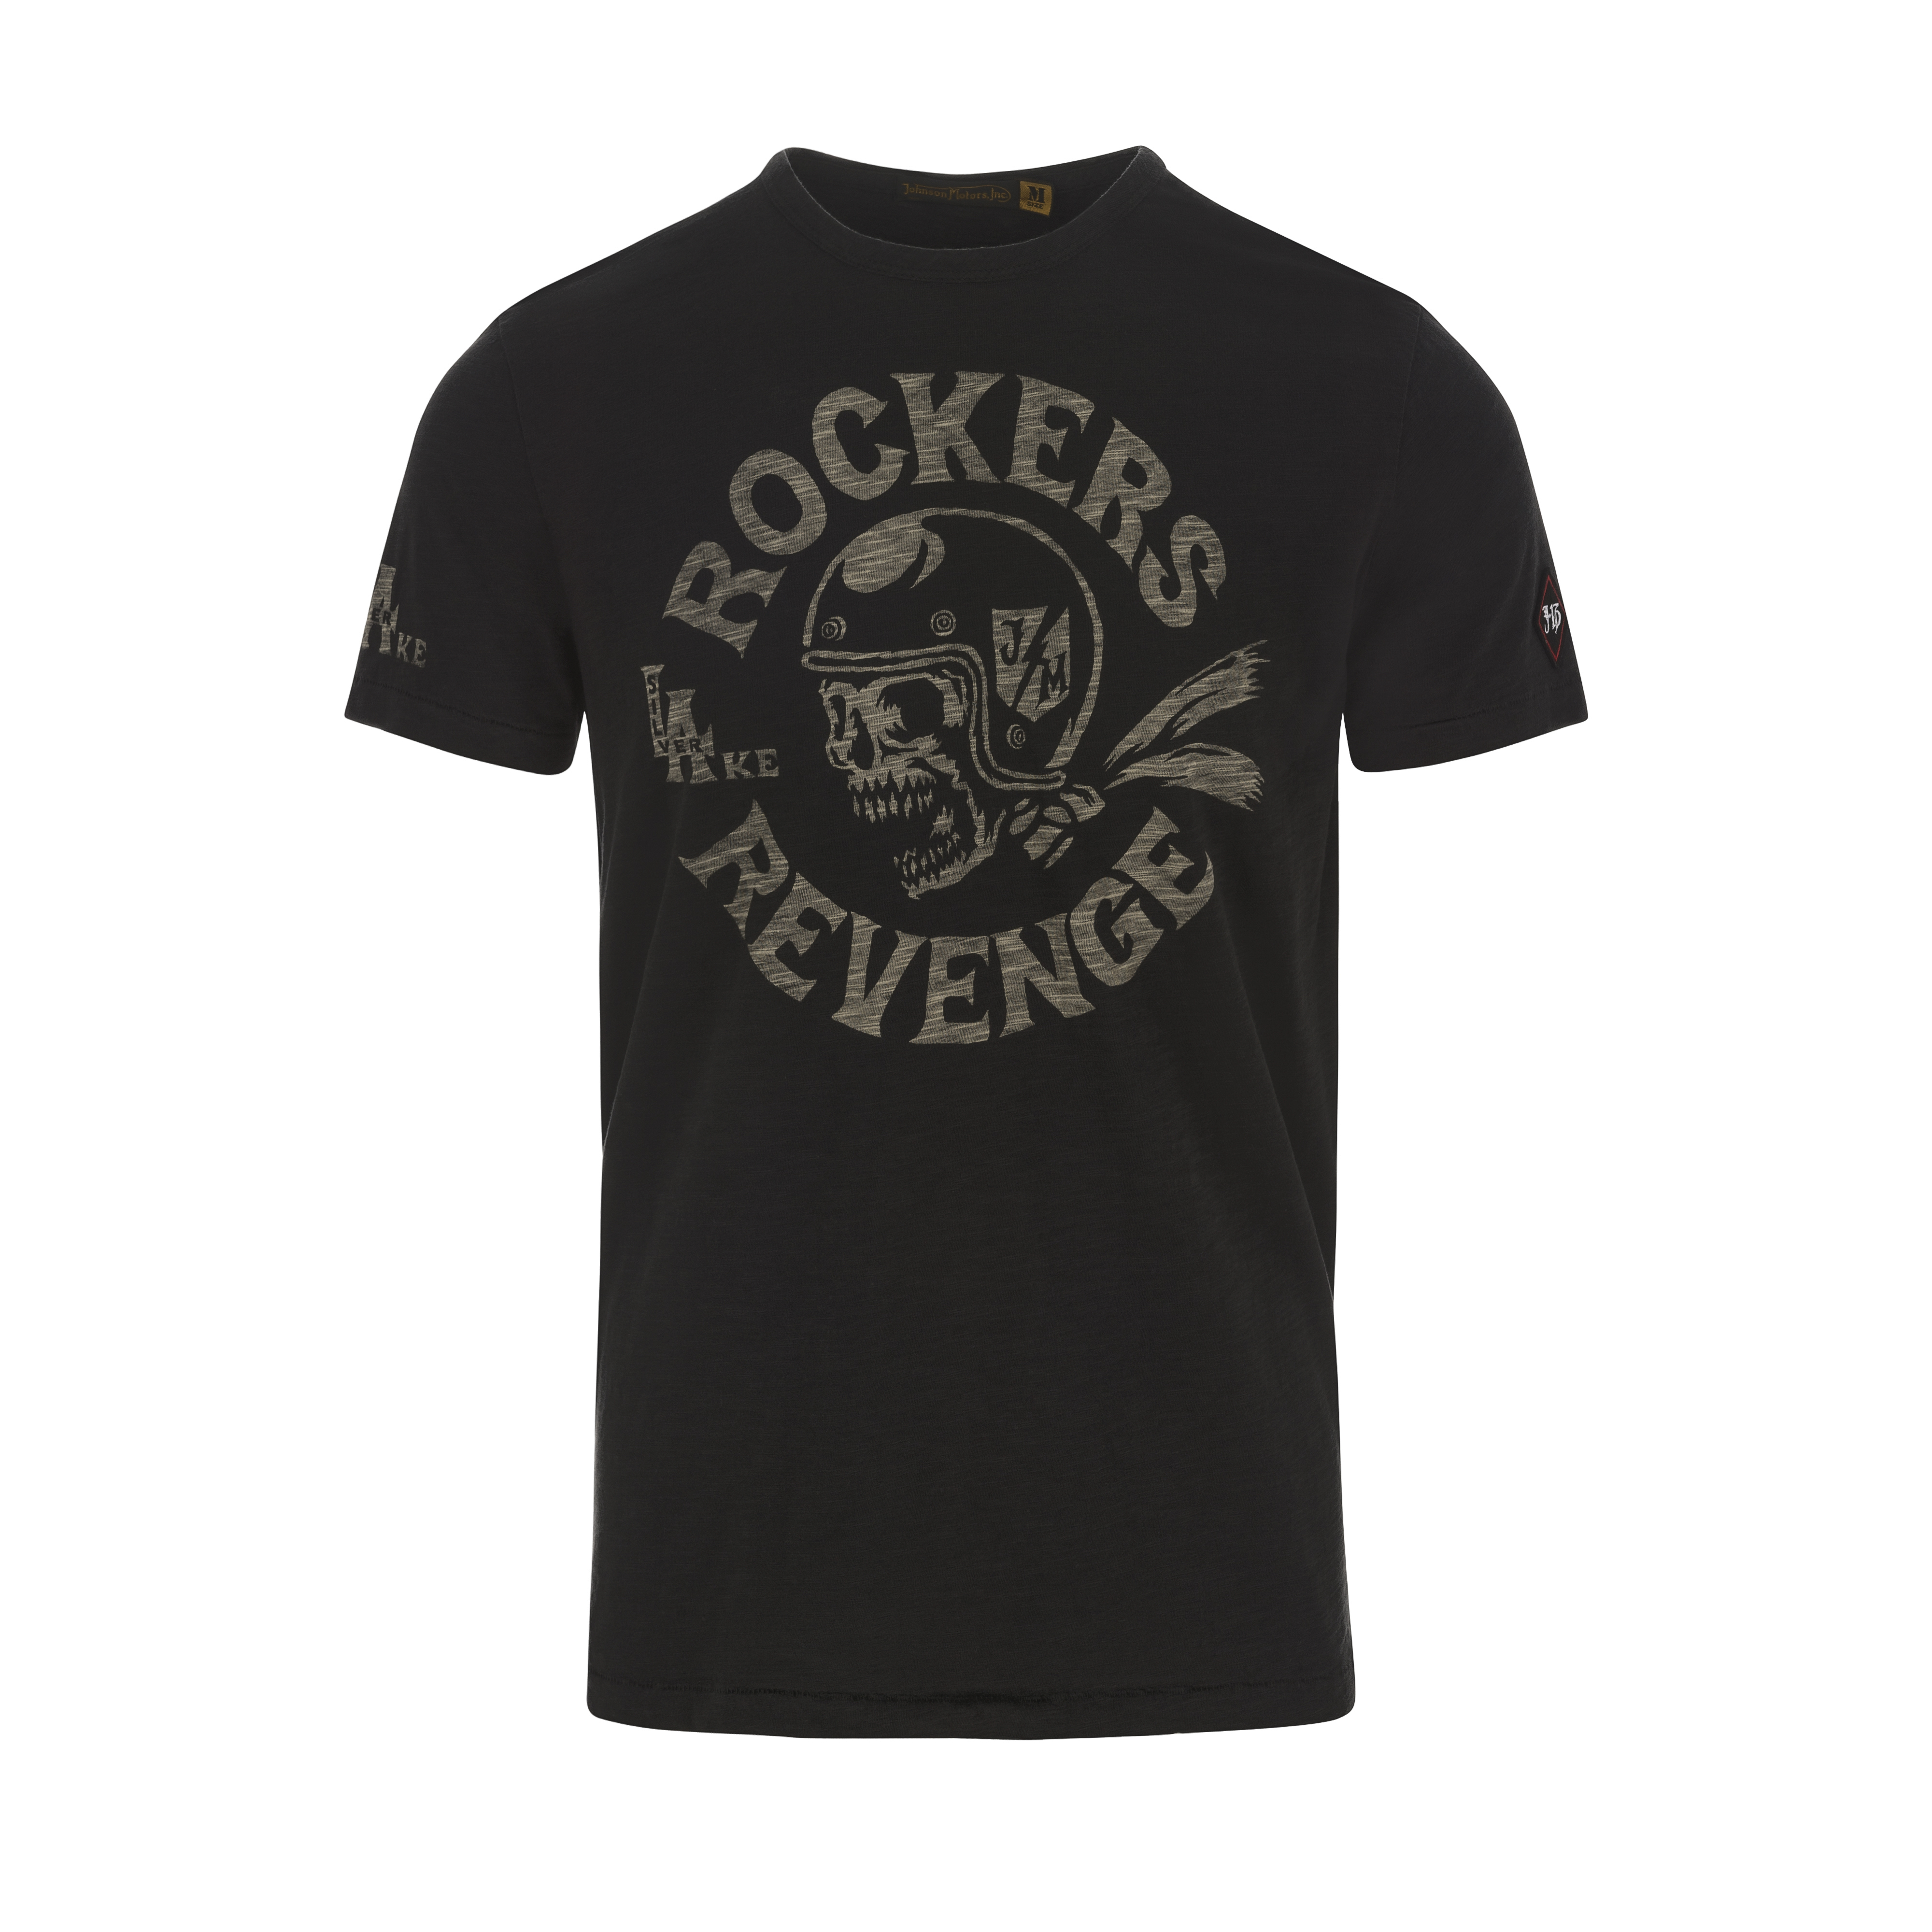 Rockers Revenge T-Shirt Oiled Black – B74